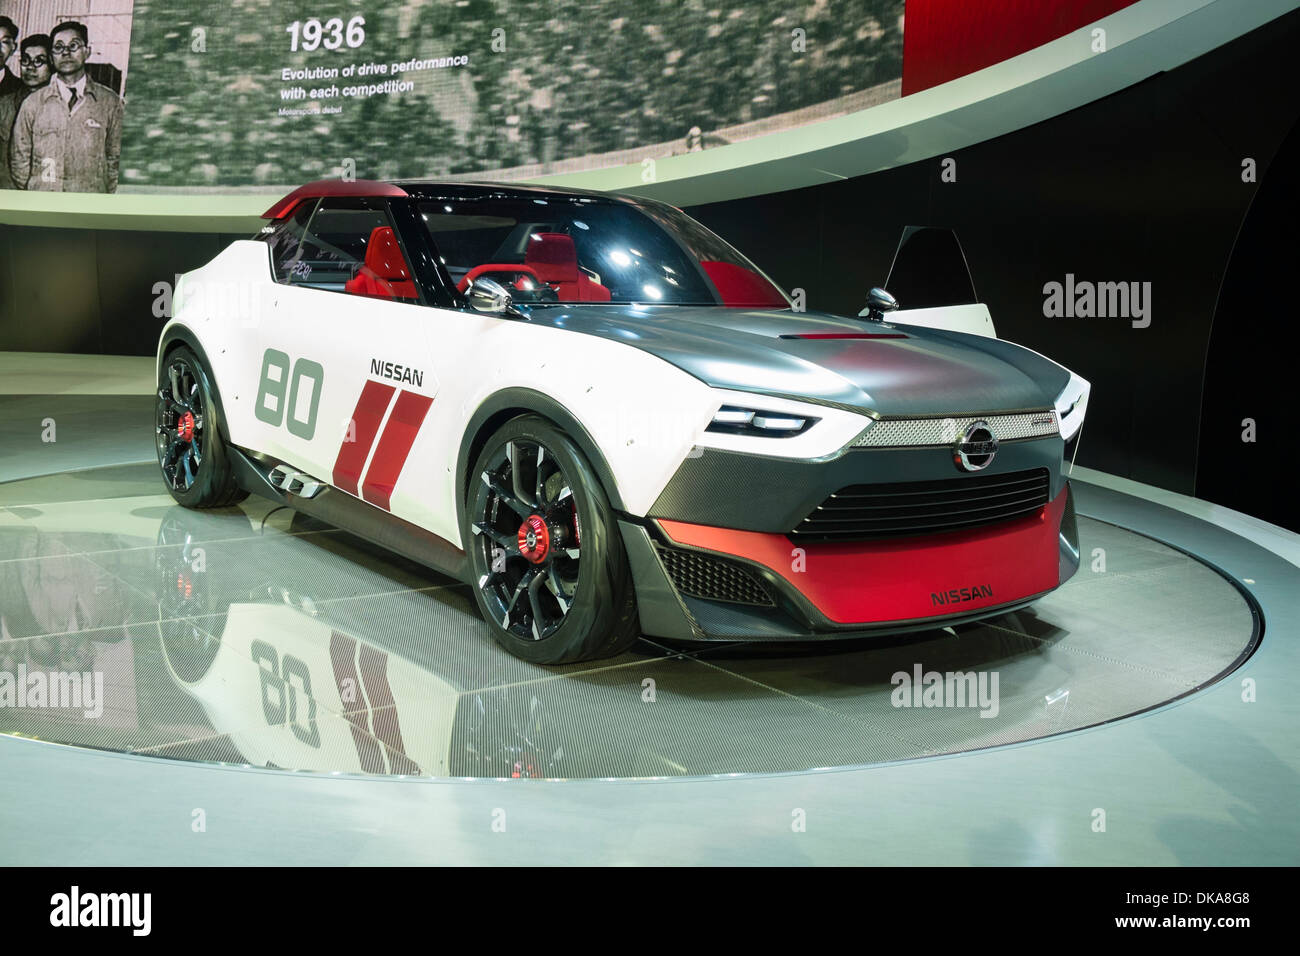 Nissan IDx Freeflow concept au Salon de l'automobile 2013 au Japon Banque D'Images